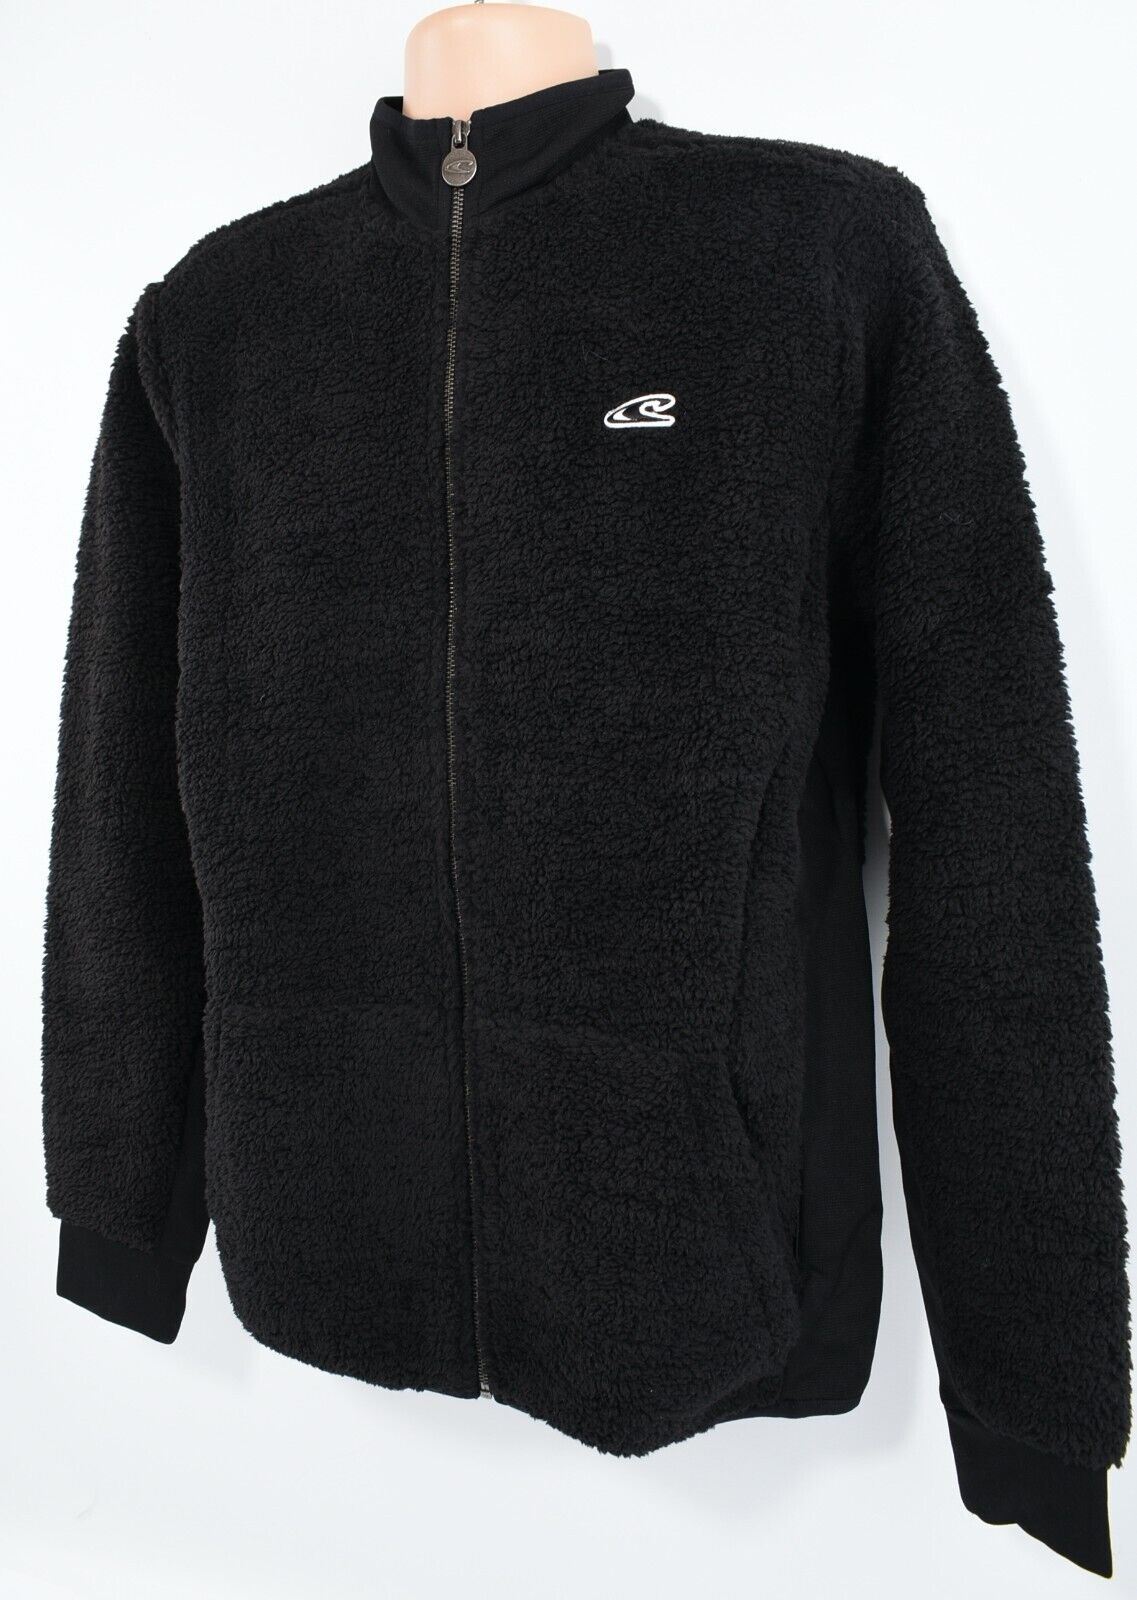 O'NEILL Men's Full Zip Sherpa Teddy Fleece Jacket, Black, size M